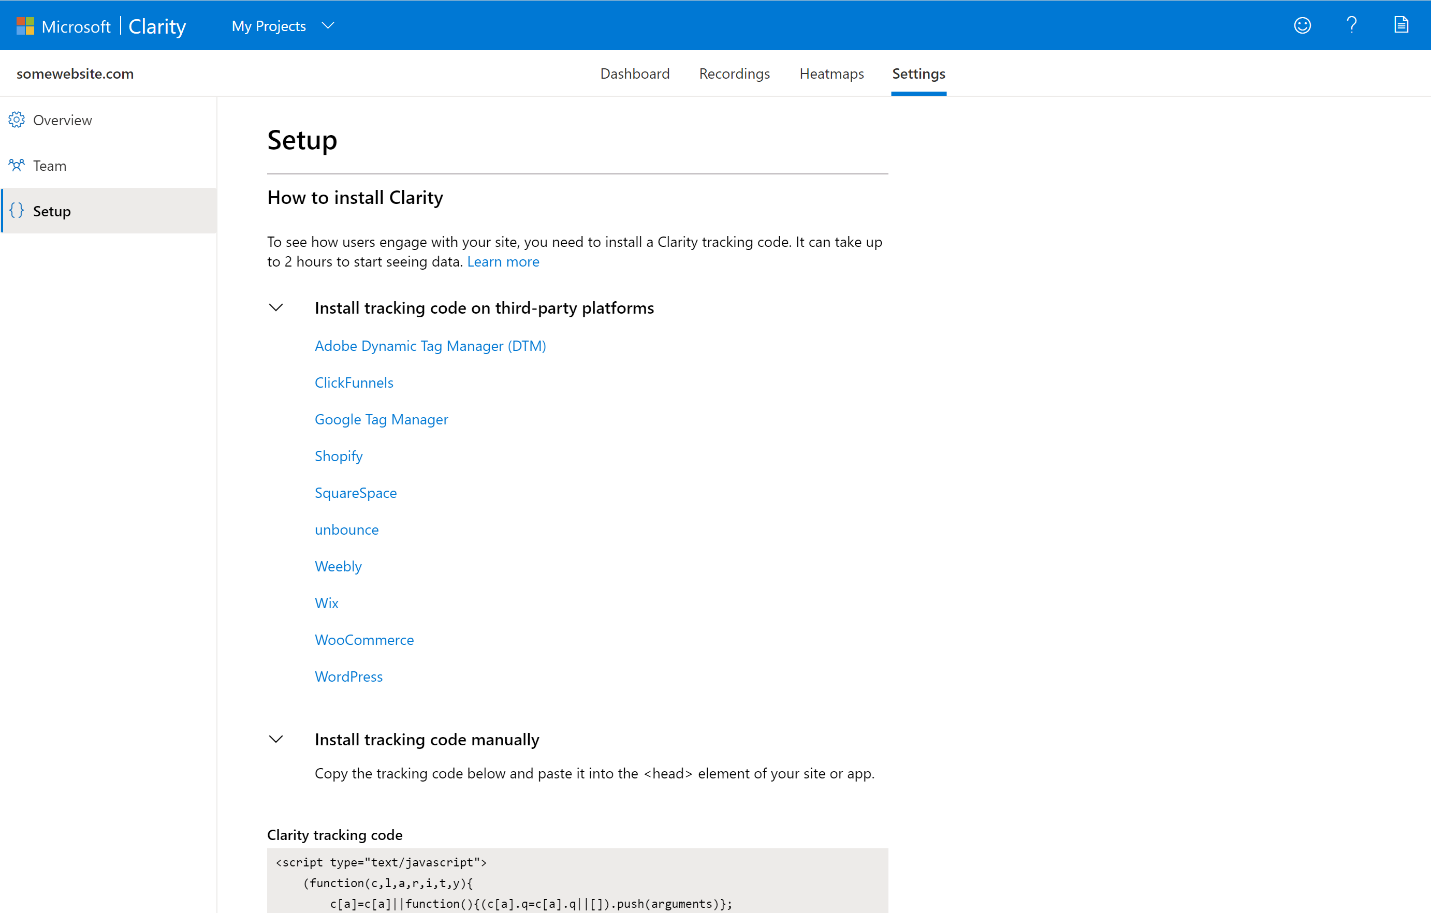 必应网站管理员工具从 Microsoft Clarity 获得功能